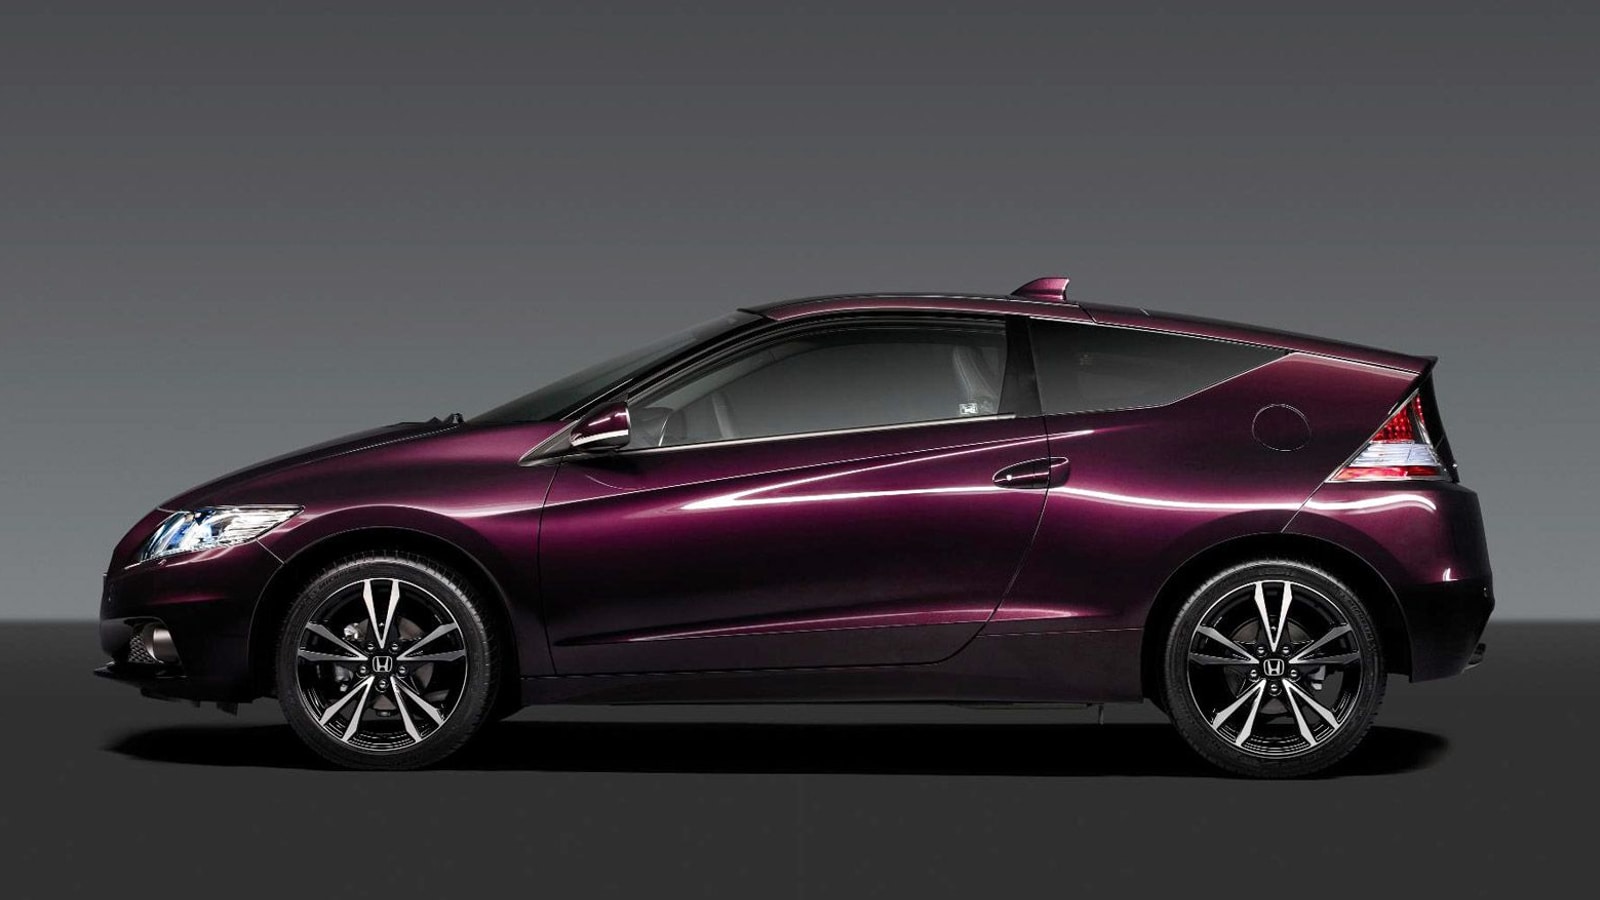 2013 Honda Cr Z Hybrid Coupe More Power New Battery